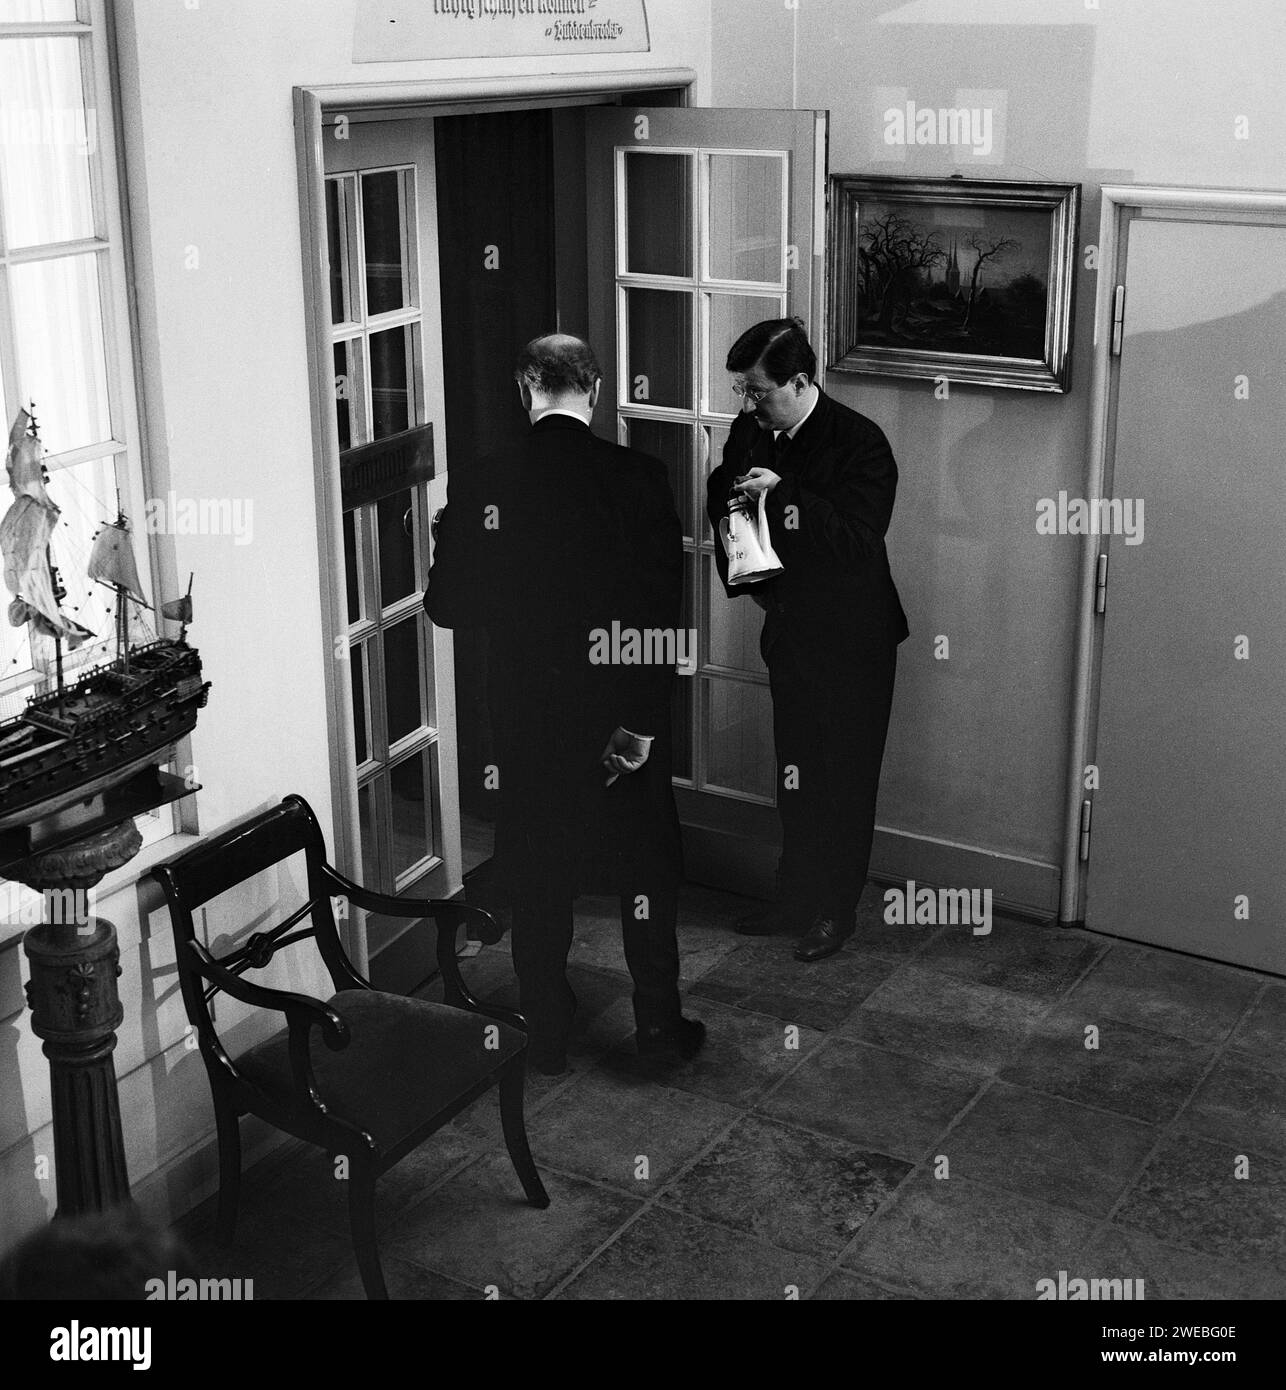 Tonio Kröger, Spielfilm nach dem gleichnamigen Roman von Thomas Mann, Deutschland 1964, Regie: Rolf Thiele, Szenenfoto Stock Photo